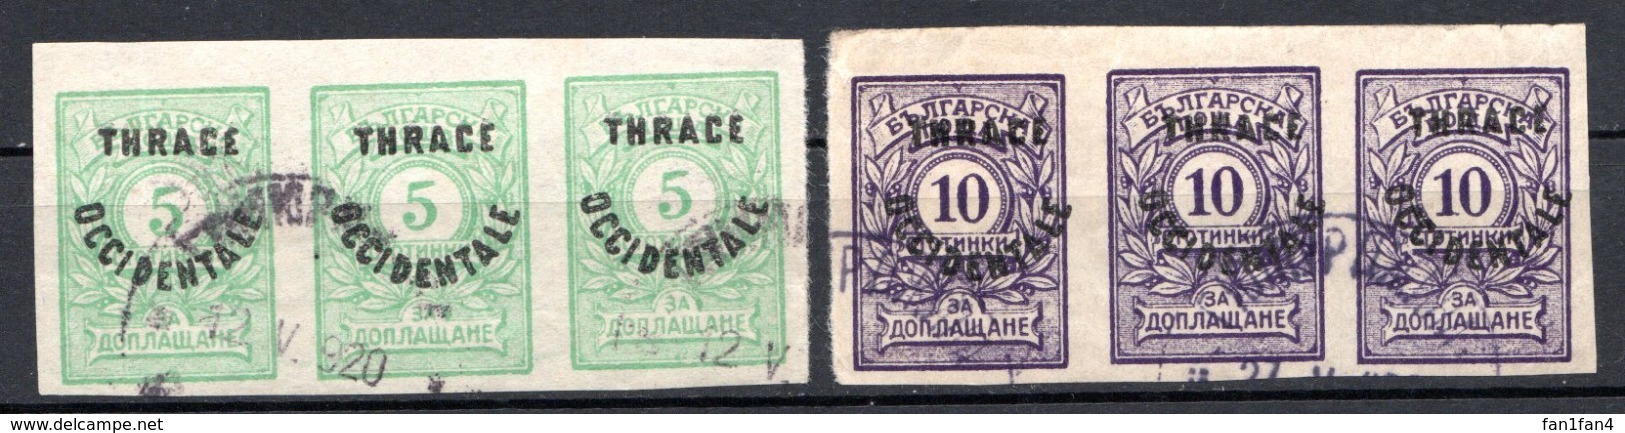 THRACE - (Occupation Interalliée) - 1920 - Taxe - Bandes De 3 Ex. Des N° 4 à 7 - (Lot De 4 Valeurs Différentes) - Gebruikt